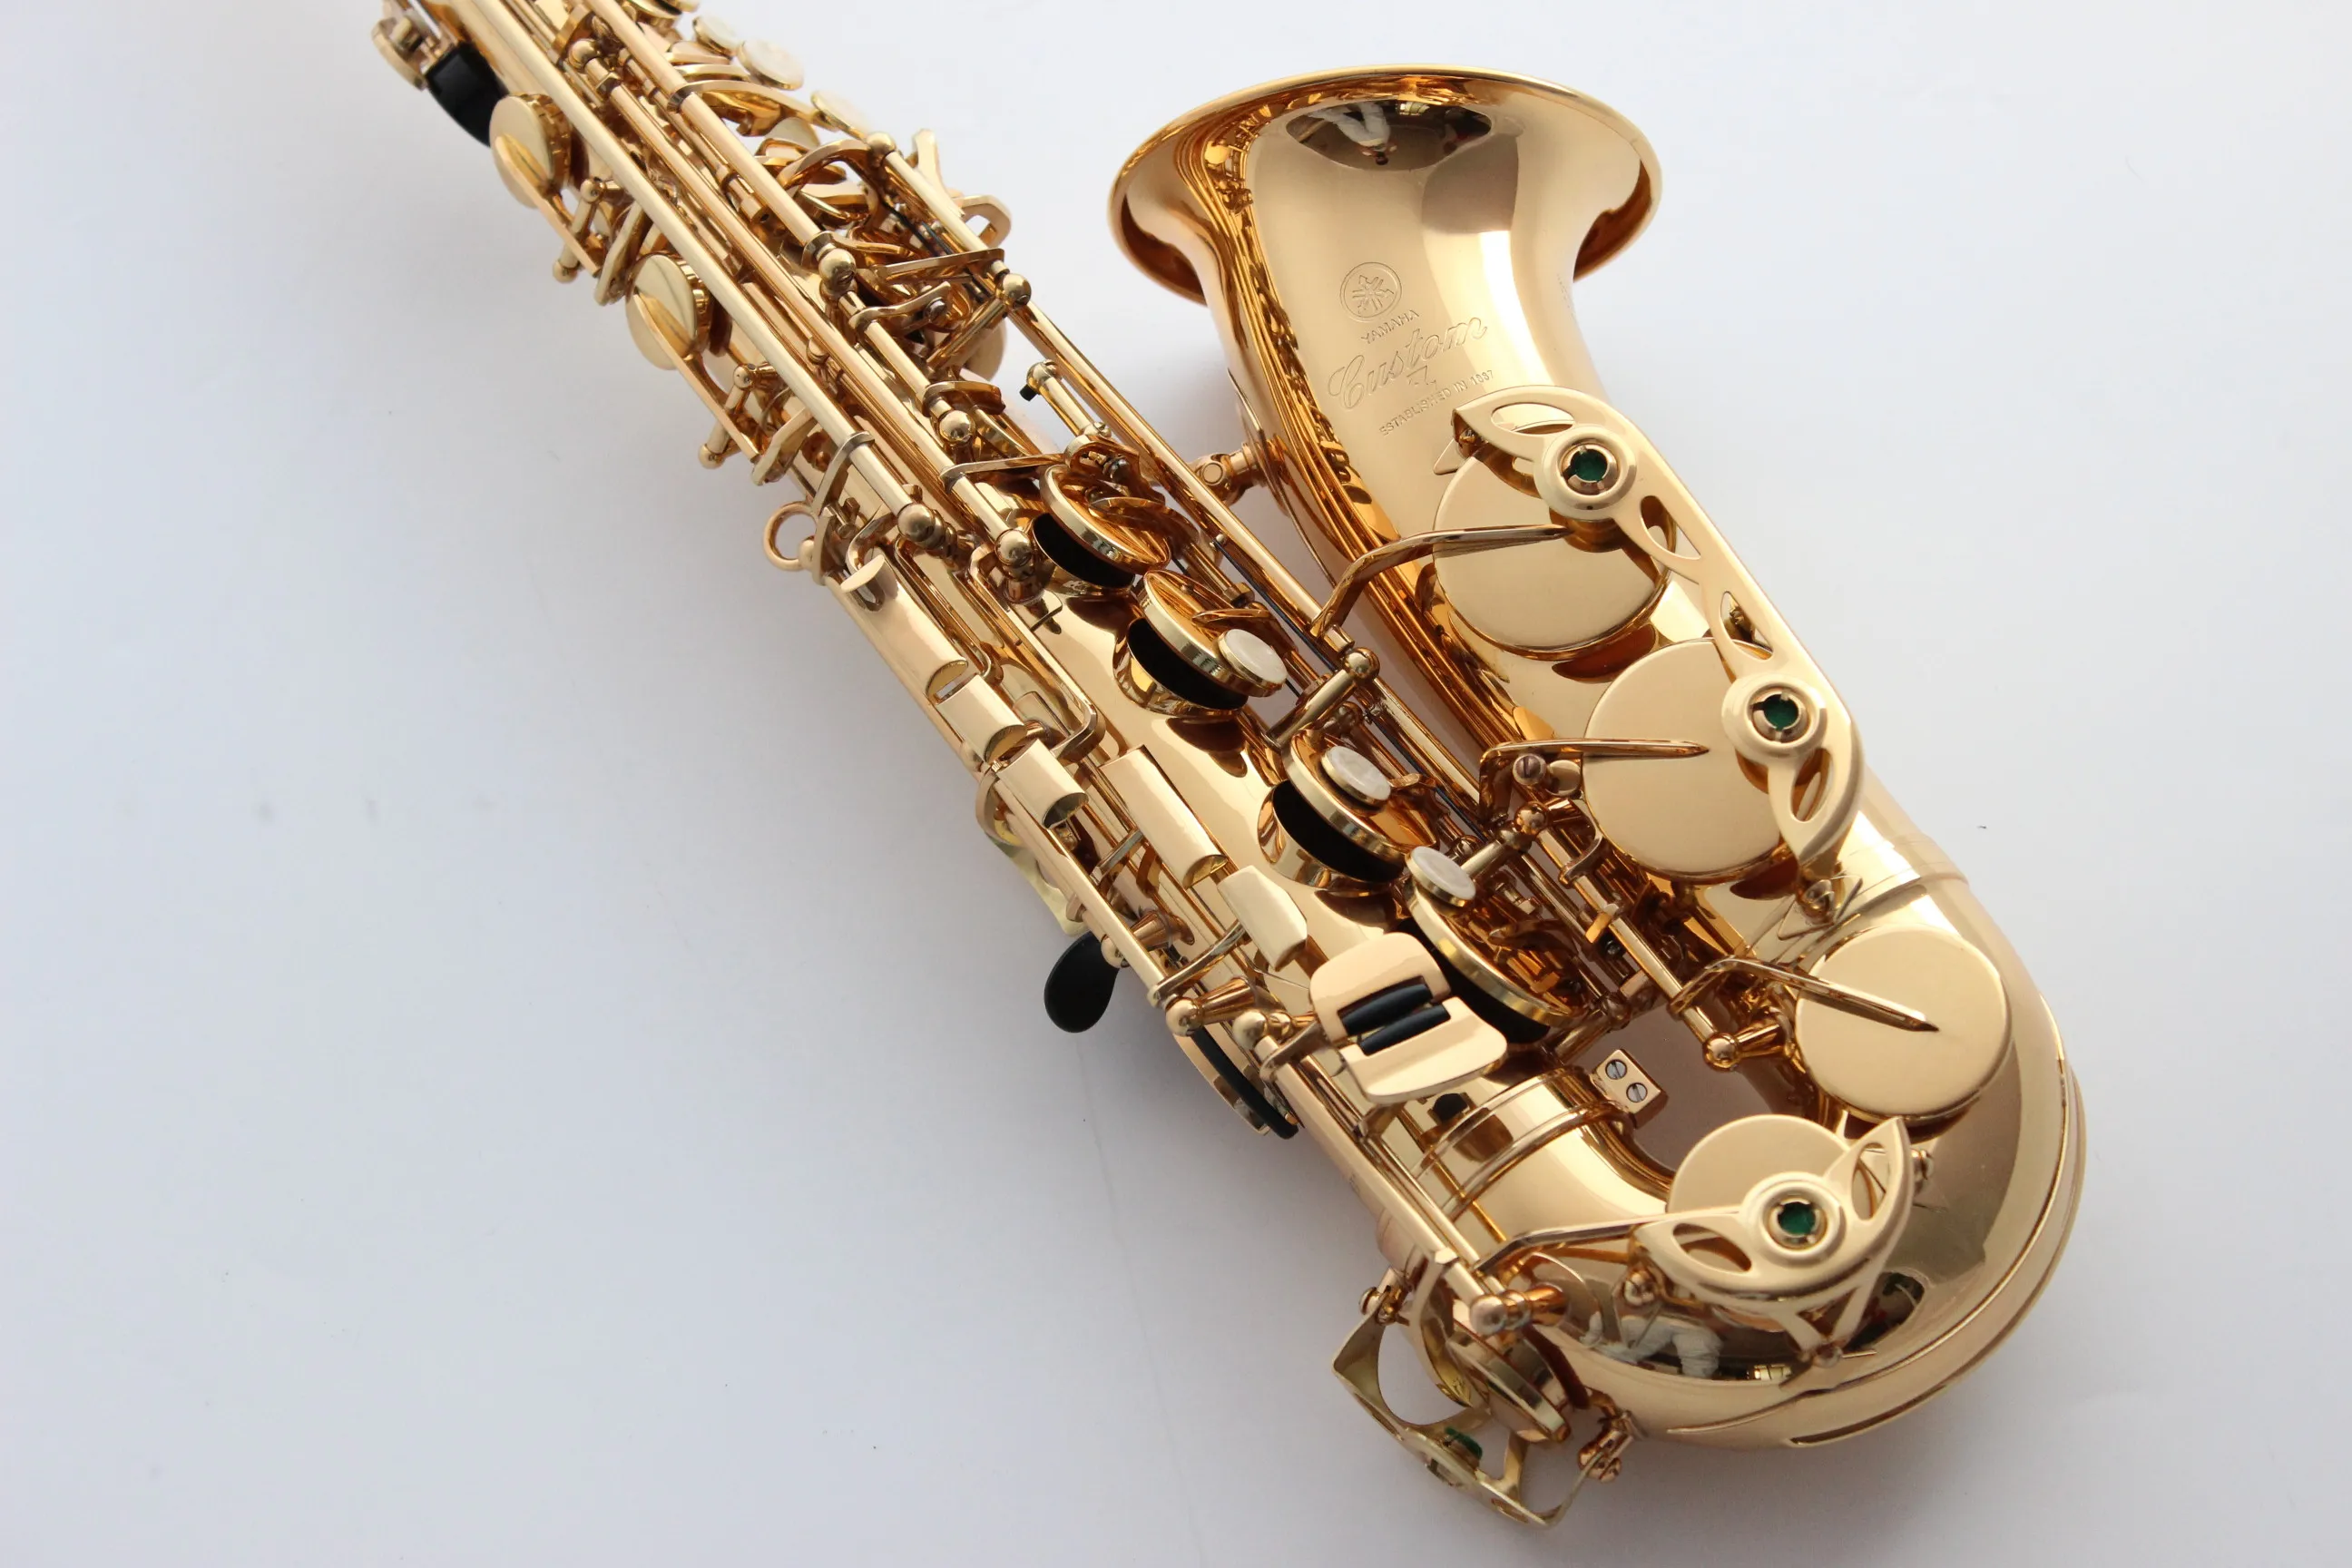 Migliore qualità marchio giapponese originale YAS-82Z E piatto sassofono contralto Drop Eb strumento musicale professionale Saxe Airducts fiore fatto a mano Sax Saxofone con custodia